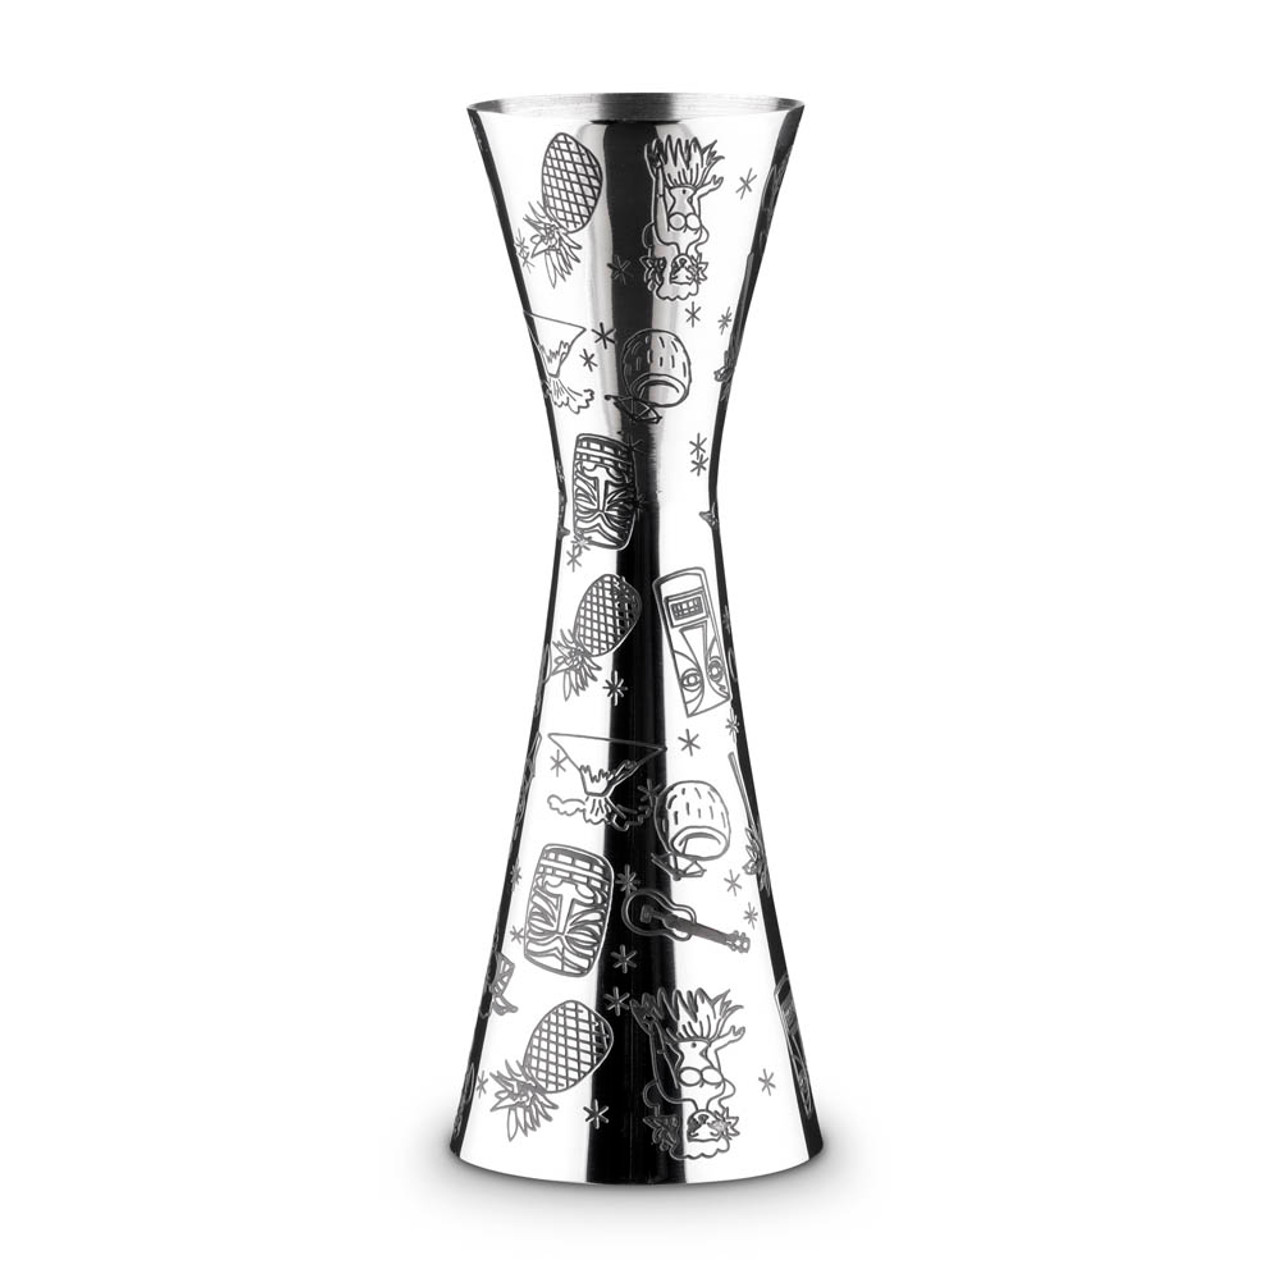 BARSKI Glass - Reversible Shot Glass - Jigger Tumbler - Designed Tumblers -  Use for Liquor - Vodka - Cocktail - Set of 6 Glasses 